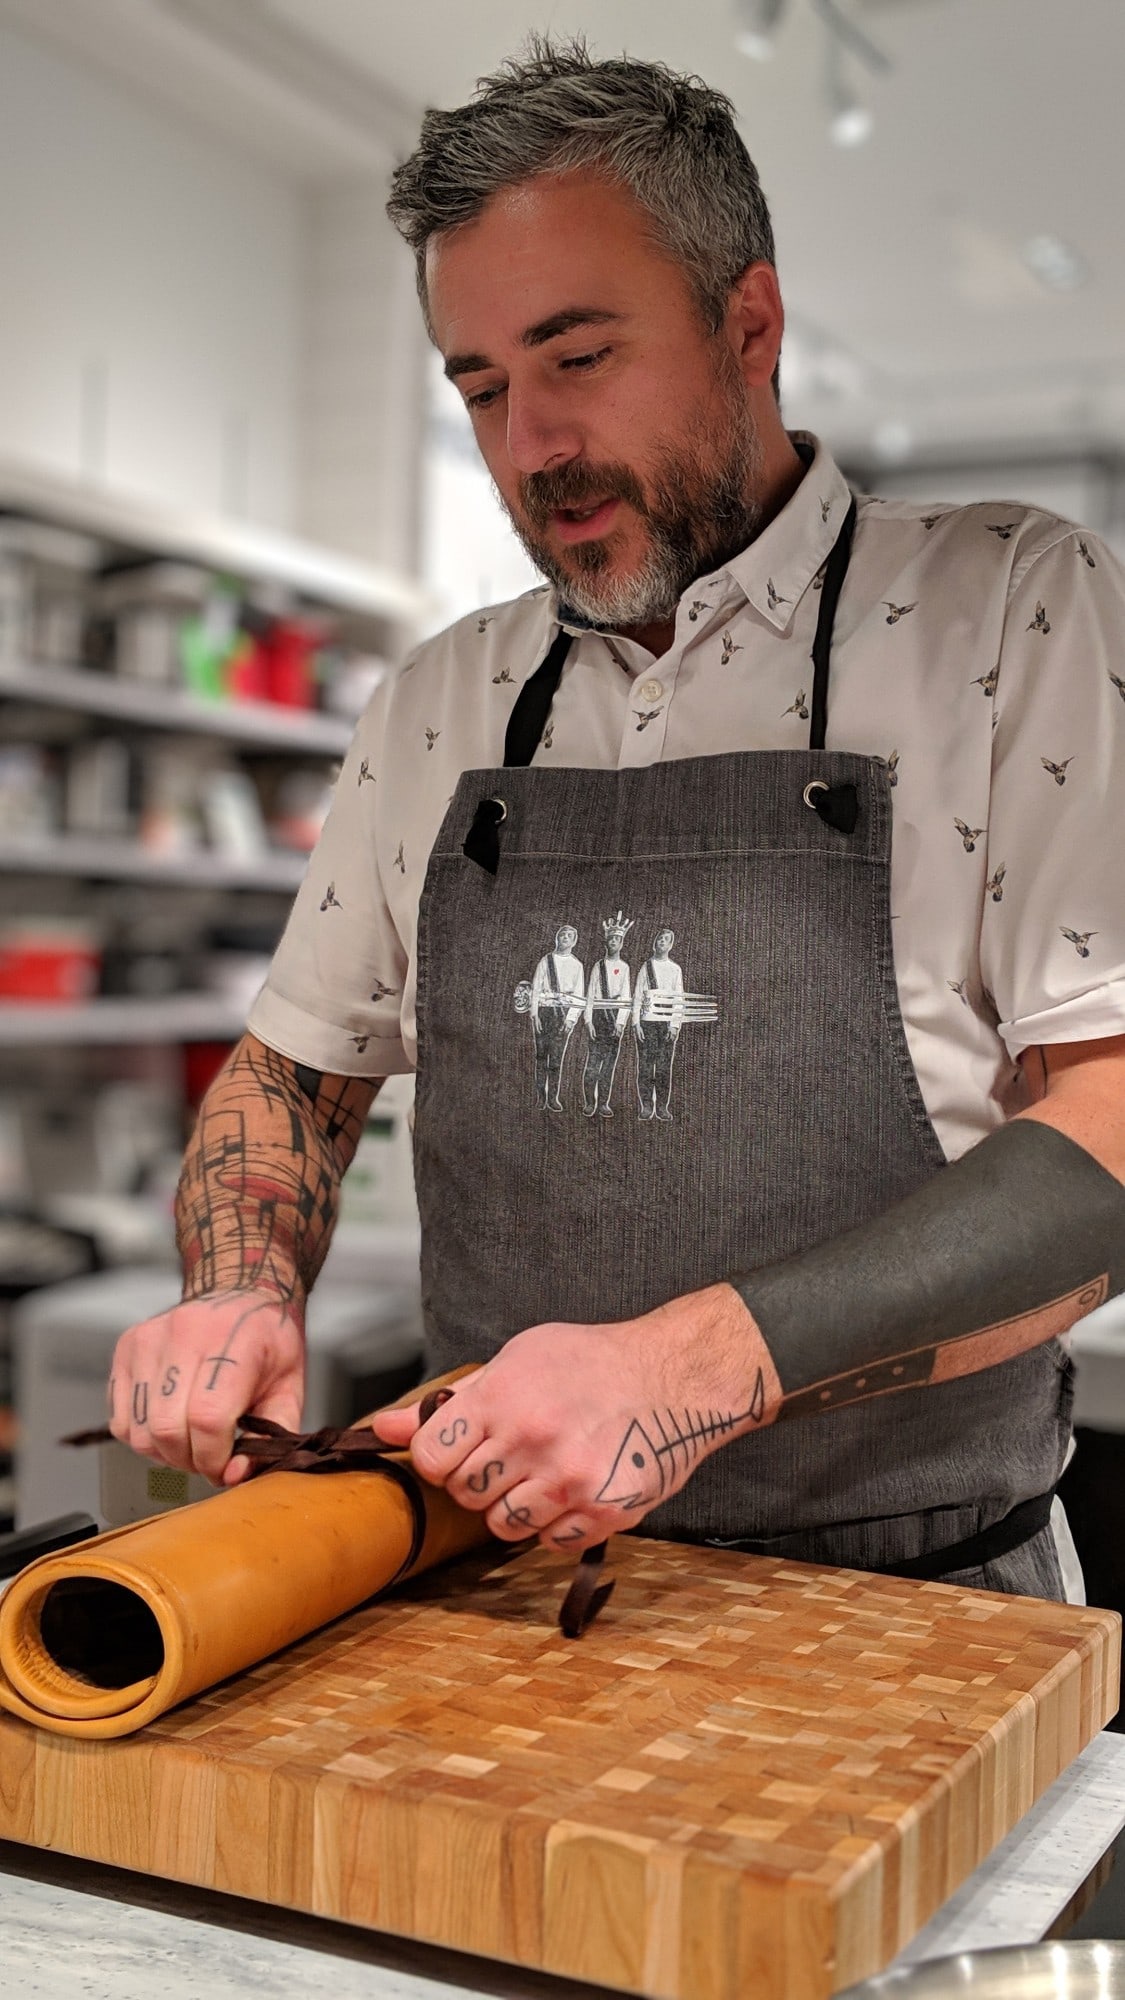 Le chef Martin Juneau du Pastaga Boutique s'apprête à faire l'atelier dans l'espace La Cuisine Rockland